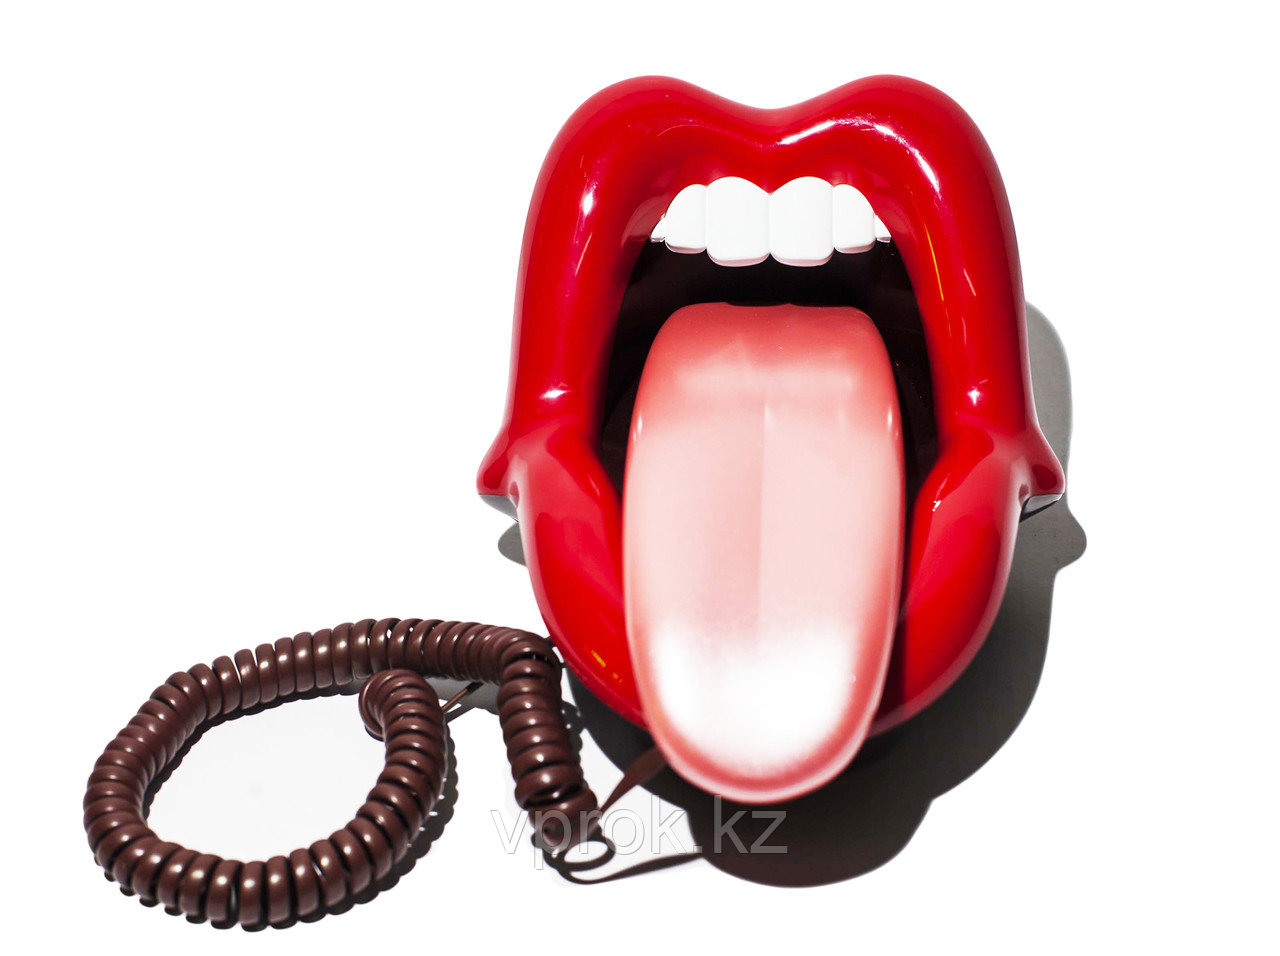 Подарок "Телефон в форме рта"